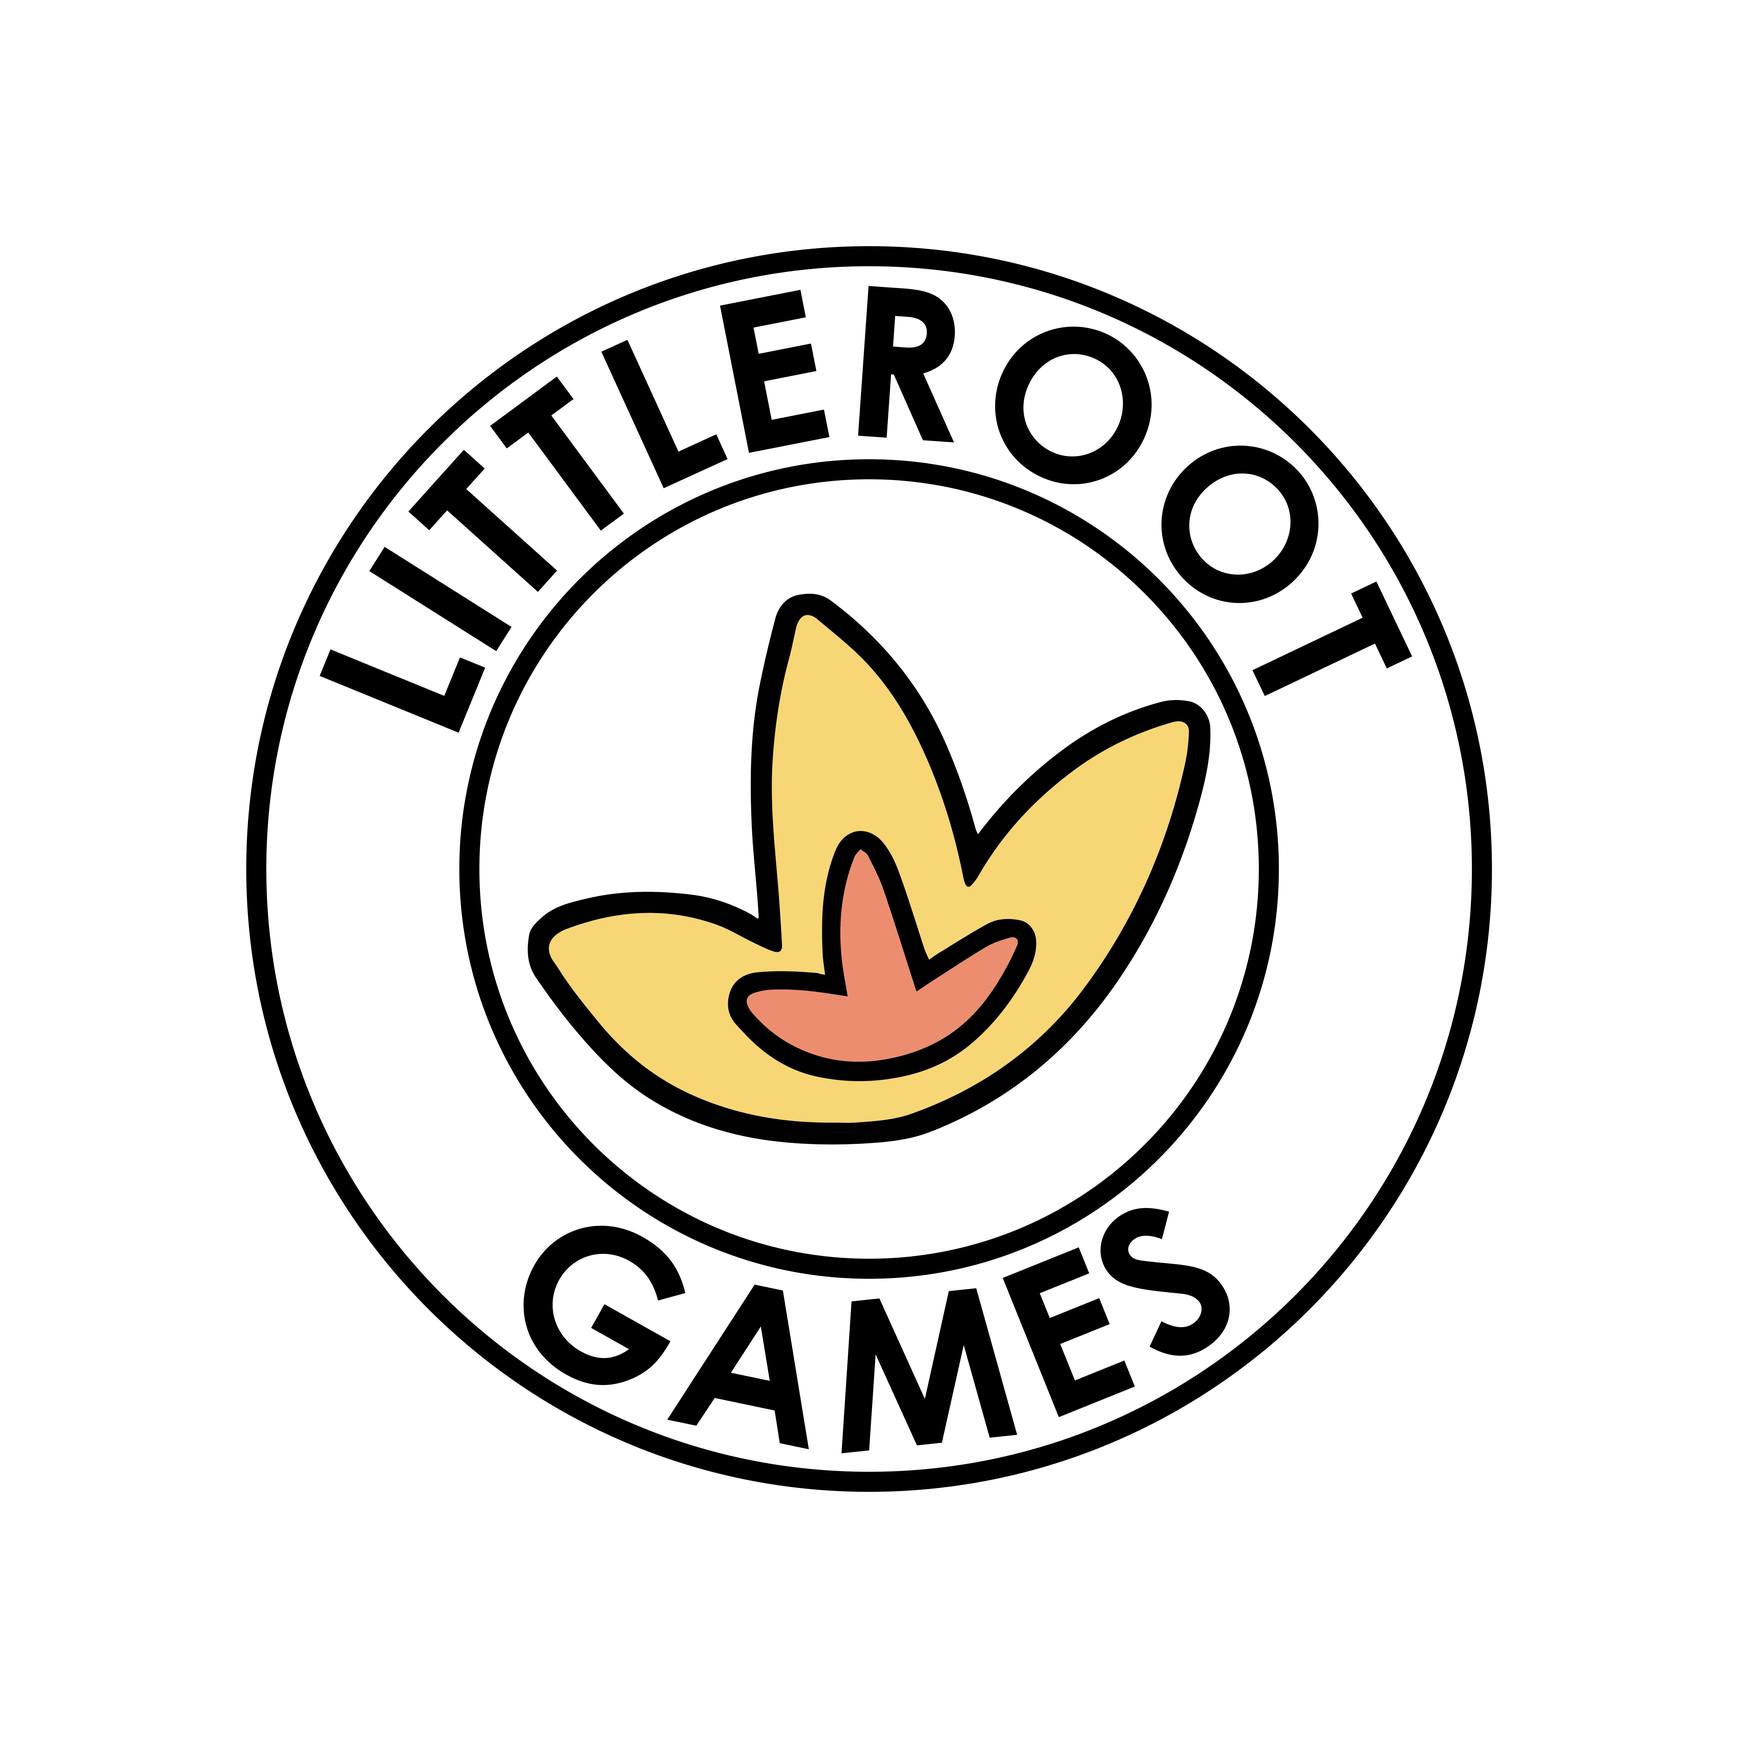 Littleroot Games